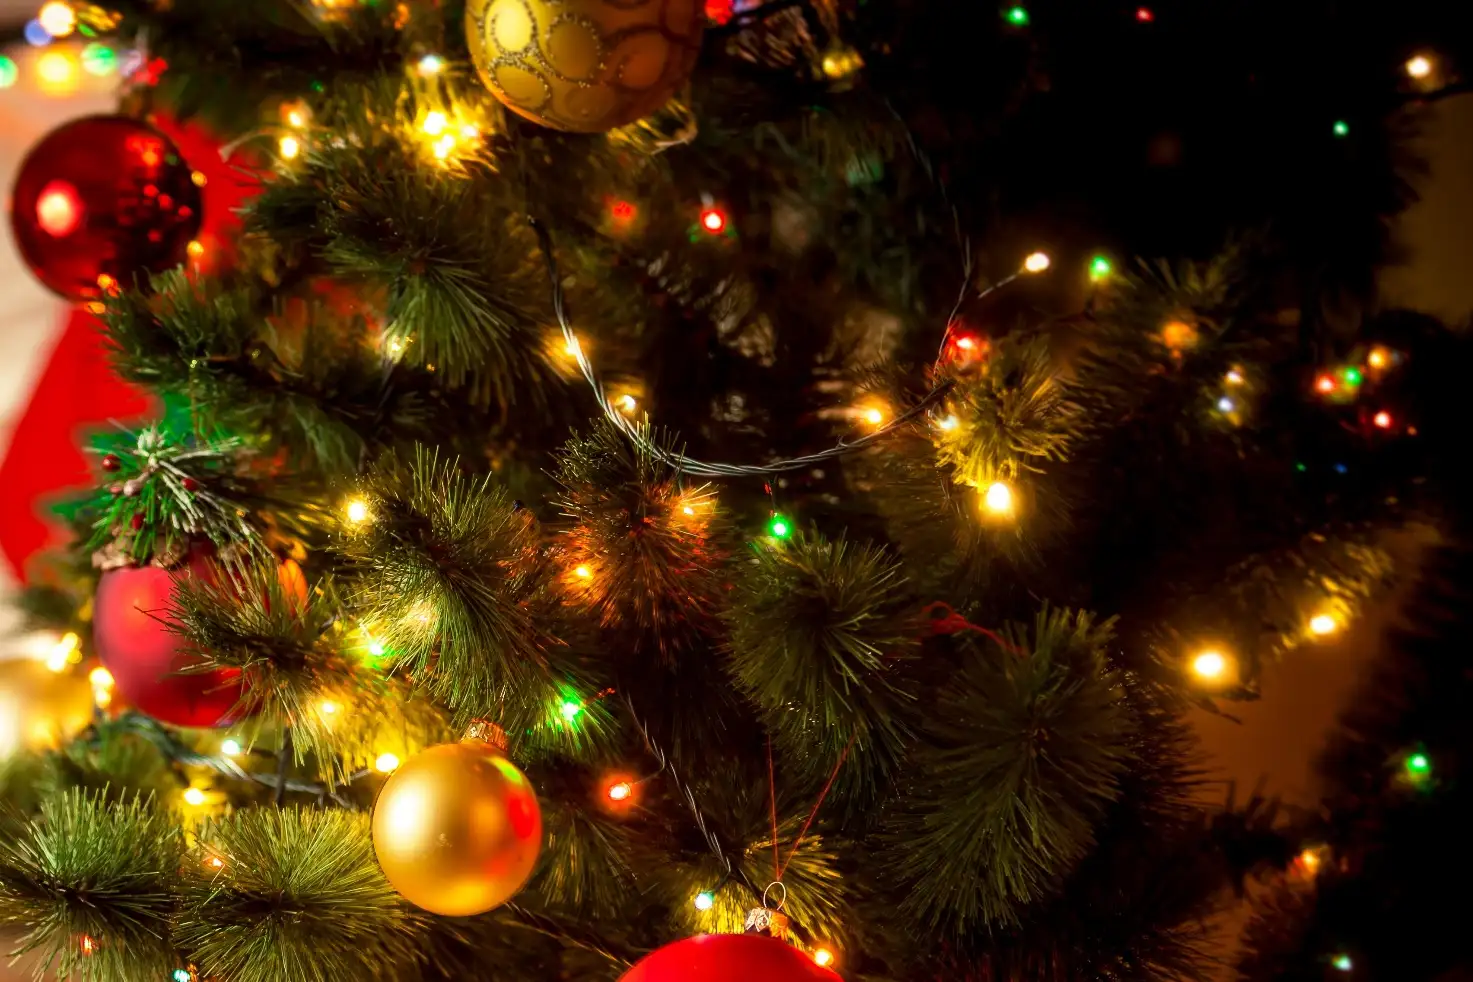 Christmas lights to make your home shine bright this holiday season